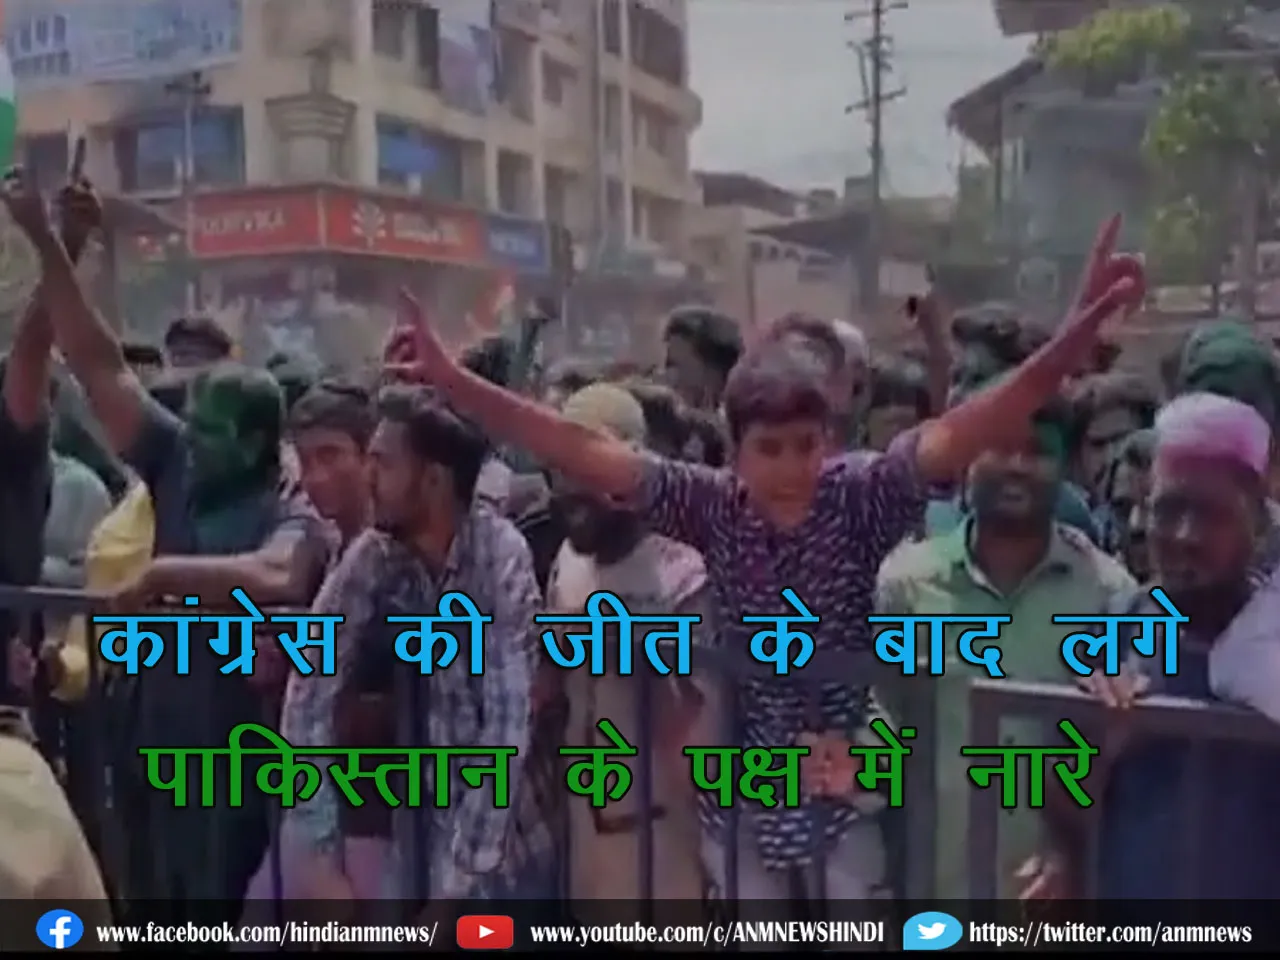 Slogans in favor of pakistan : कांग्रेस की जीत के बाद लगे पाकिस्तान के पक्ष में नारे (देखिए वीडियो)